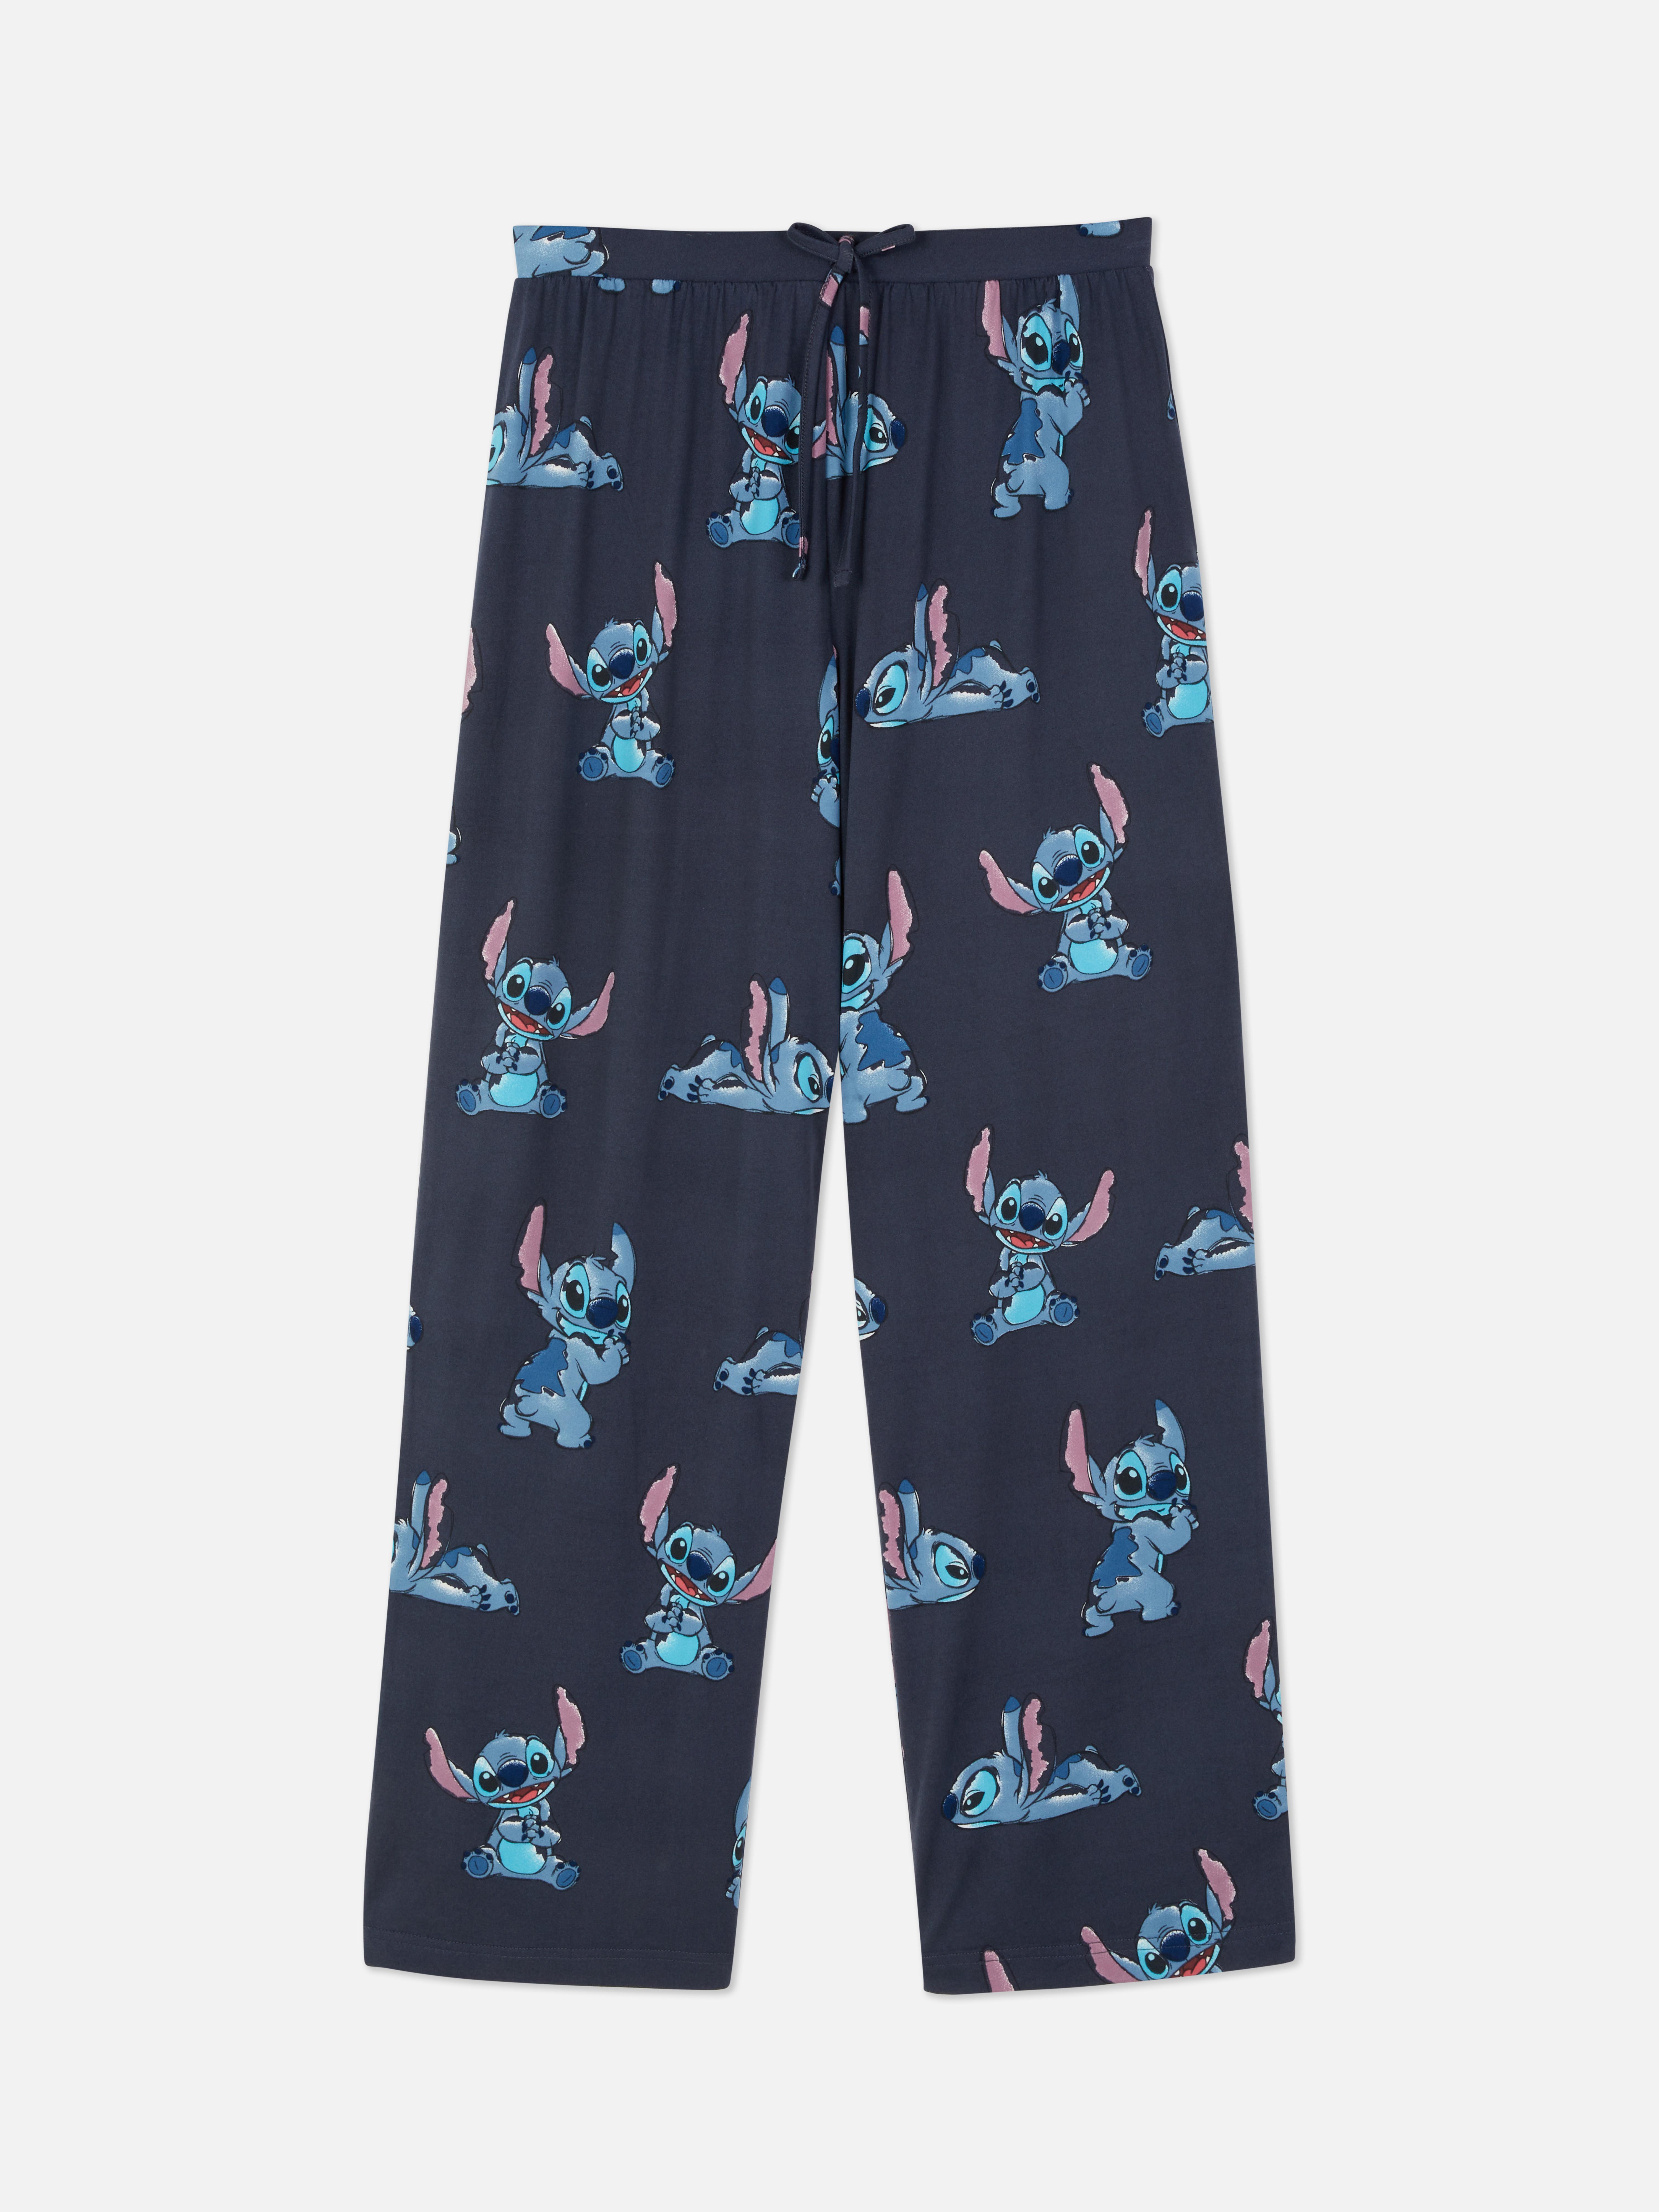 Disney's Lilo & Stitch Pyjama Bottoms